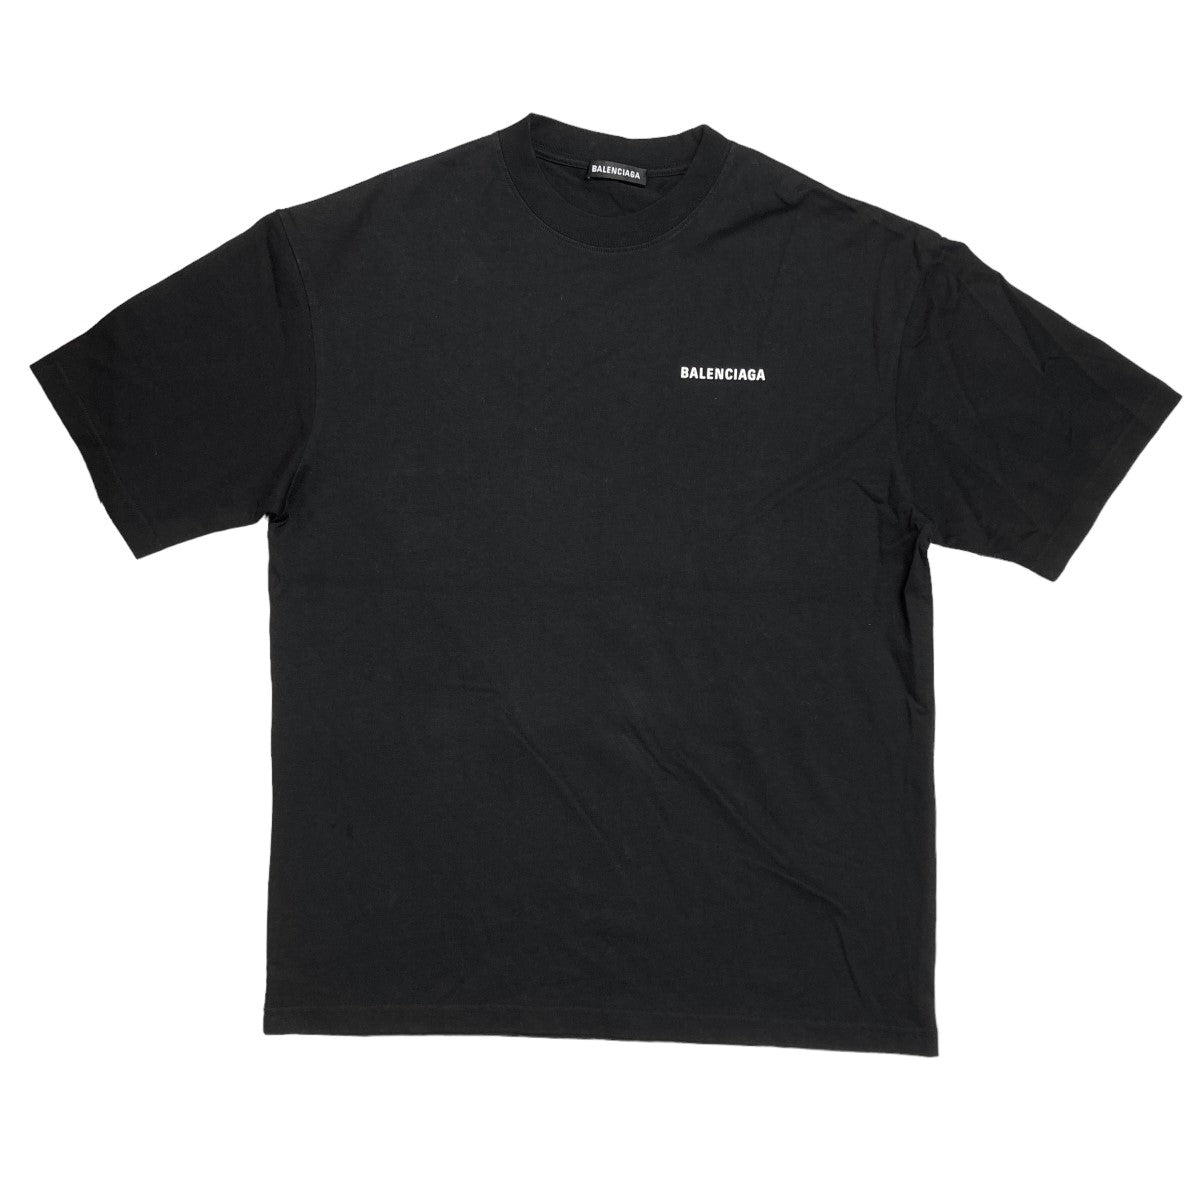 BALENCIAGA(バレンシアガ) MediumFit T-shirt ロゴプリント半袖Tシャツ ...